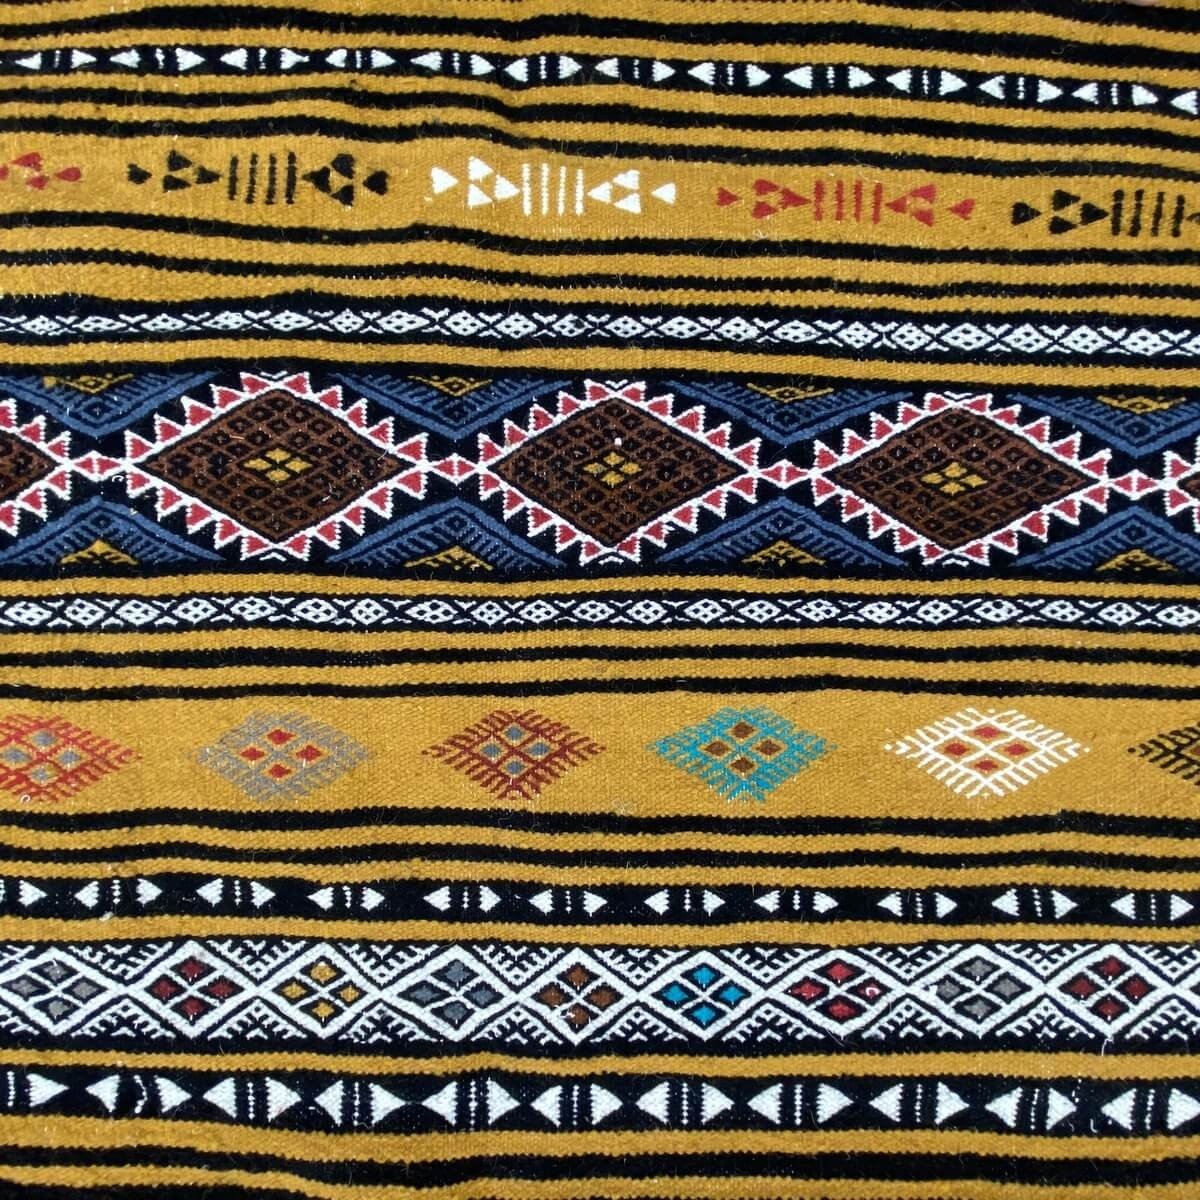 Tapis berbère Tapis Kilim Atrousse 115x200 Jaune/Multiclore (Tissé main, Laine) Tapis kilim tunisien style tapis marocain. Tapis